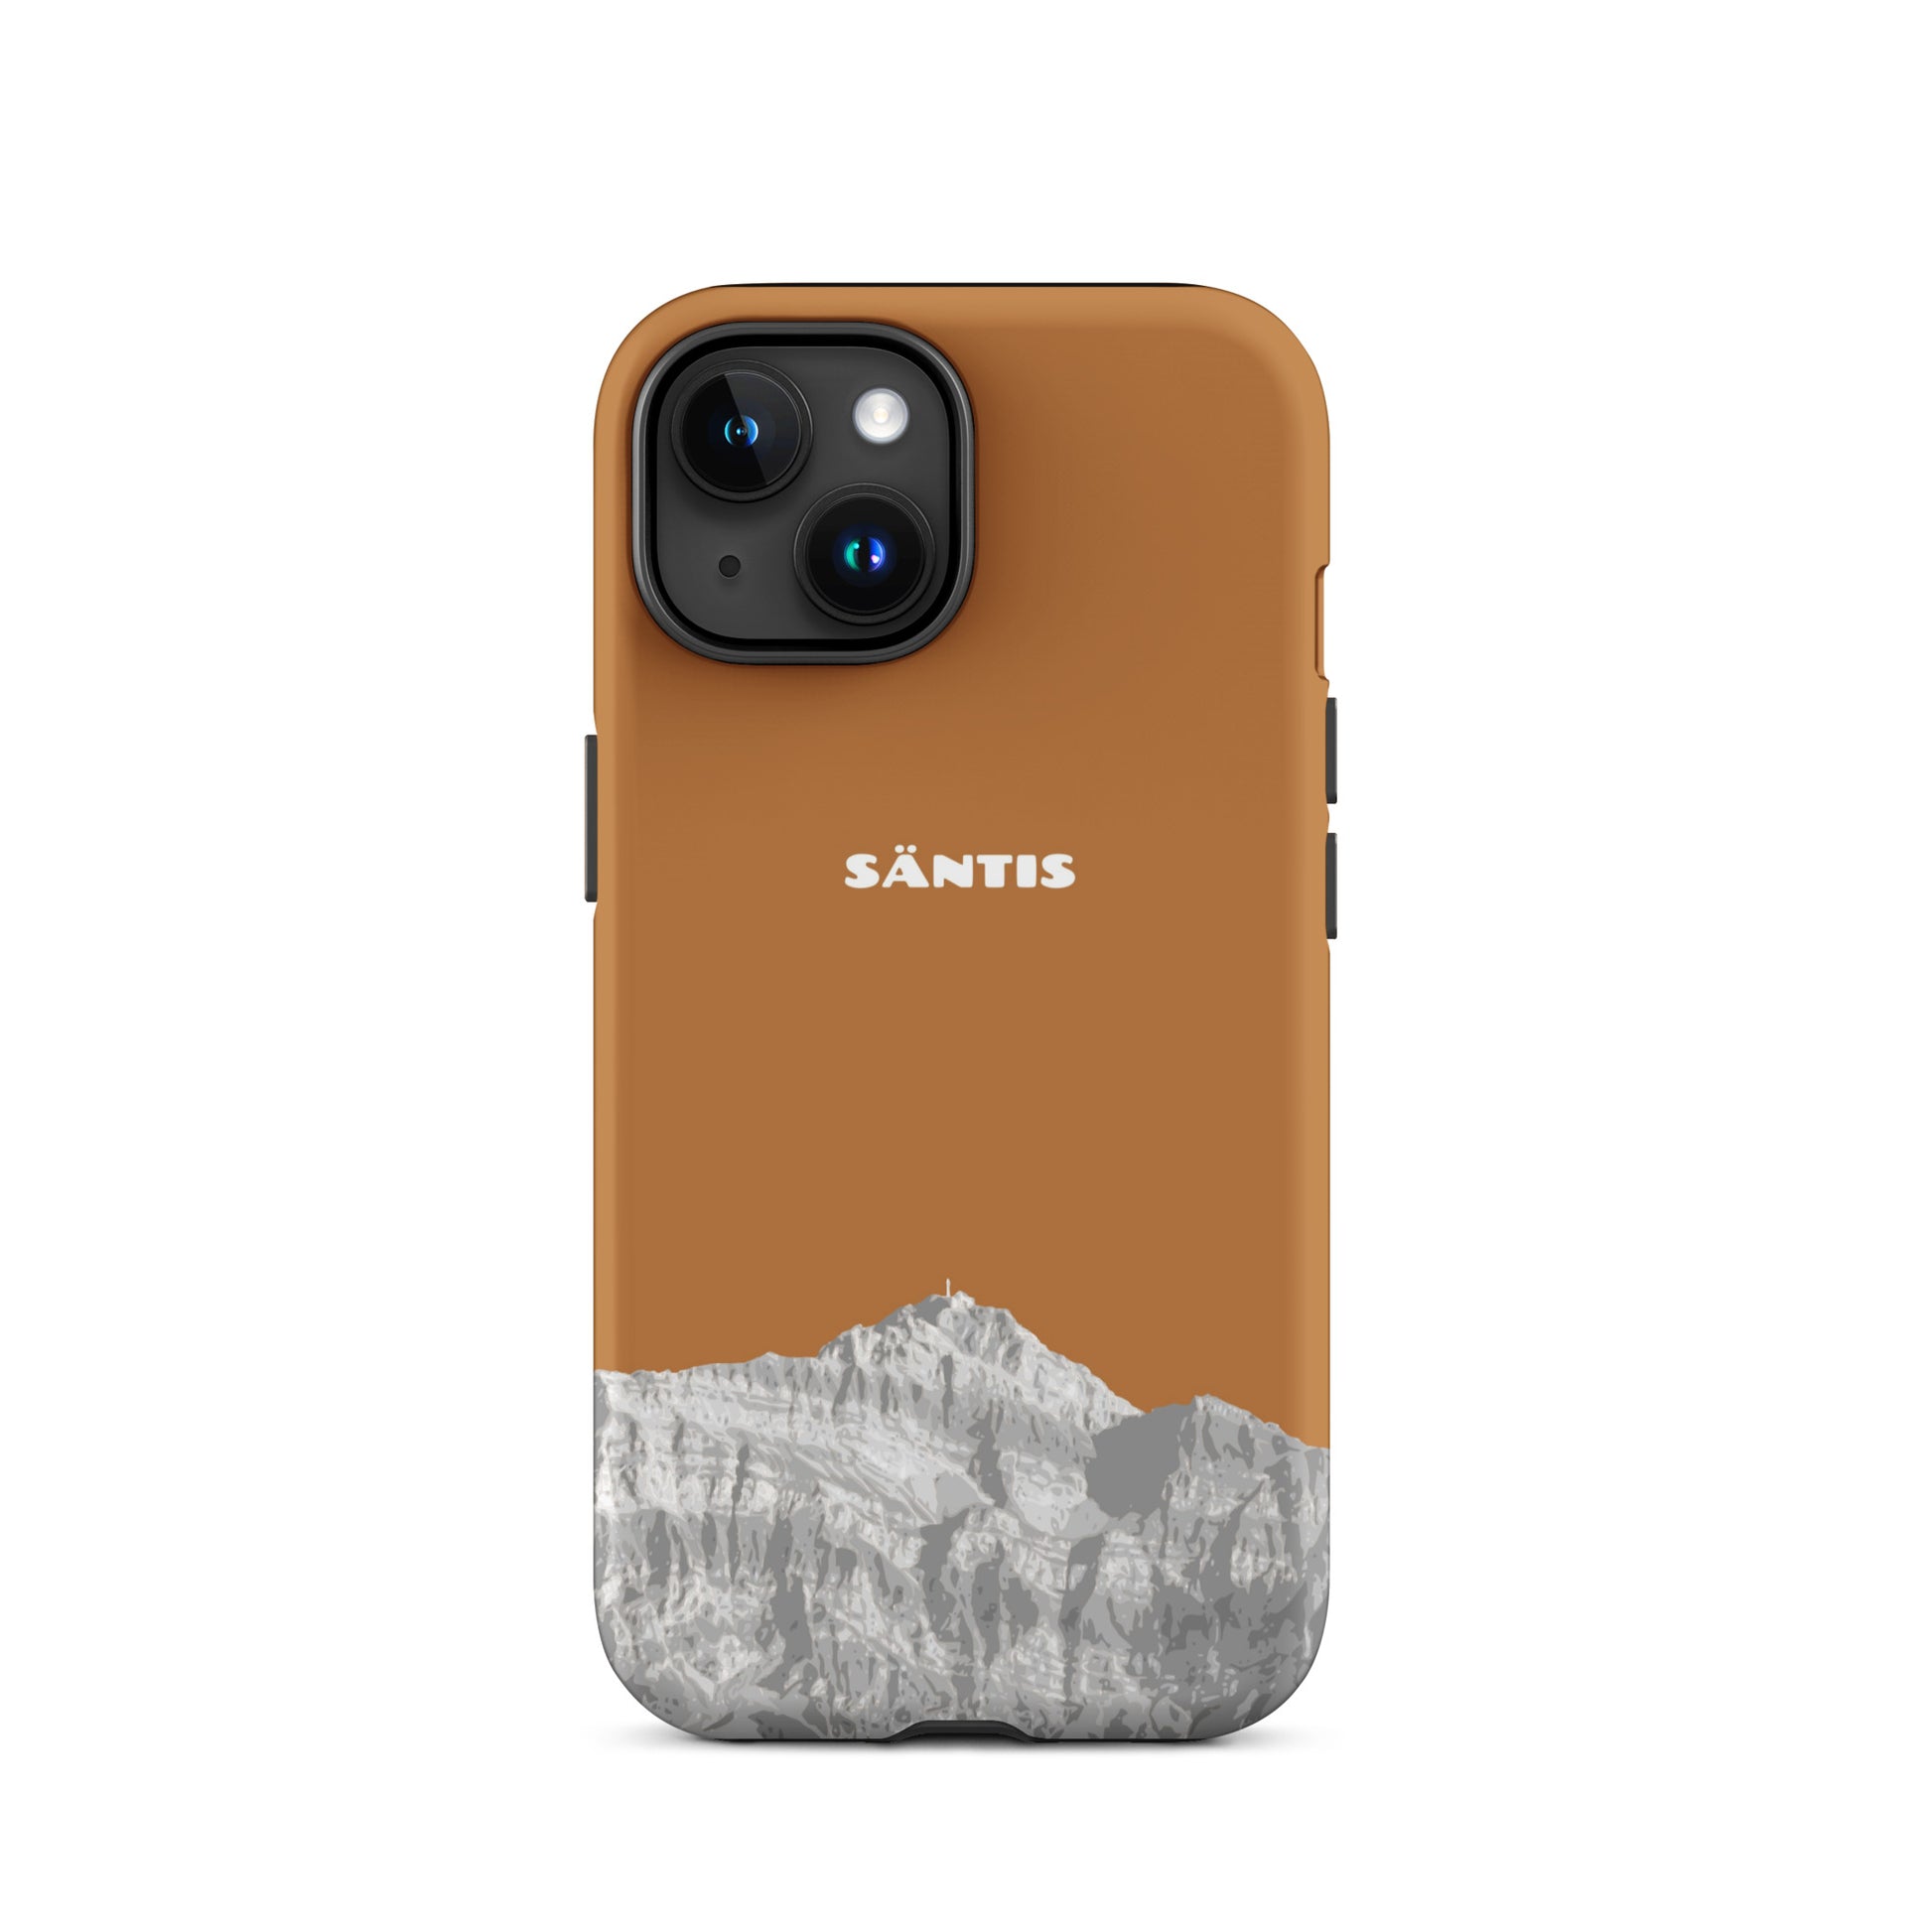 Hülle für das iPhone 15 von Apple in der Farbe Kupfer, dass den Säntis im Alpstein zeigt.